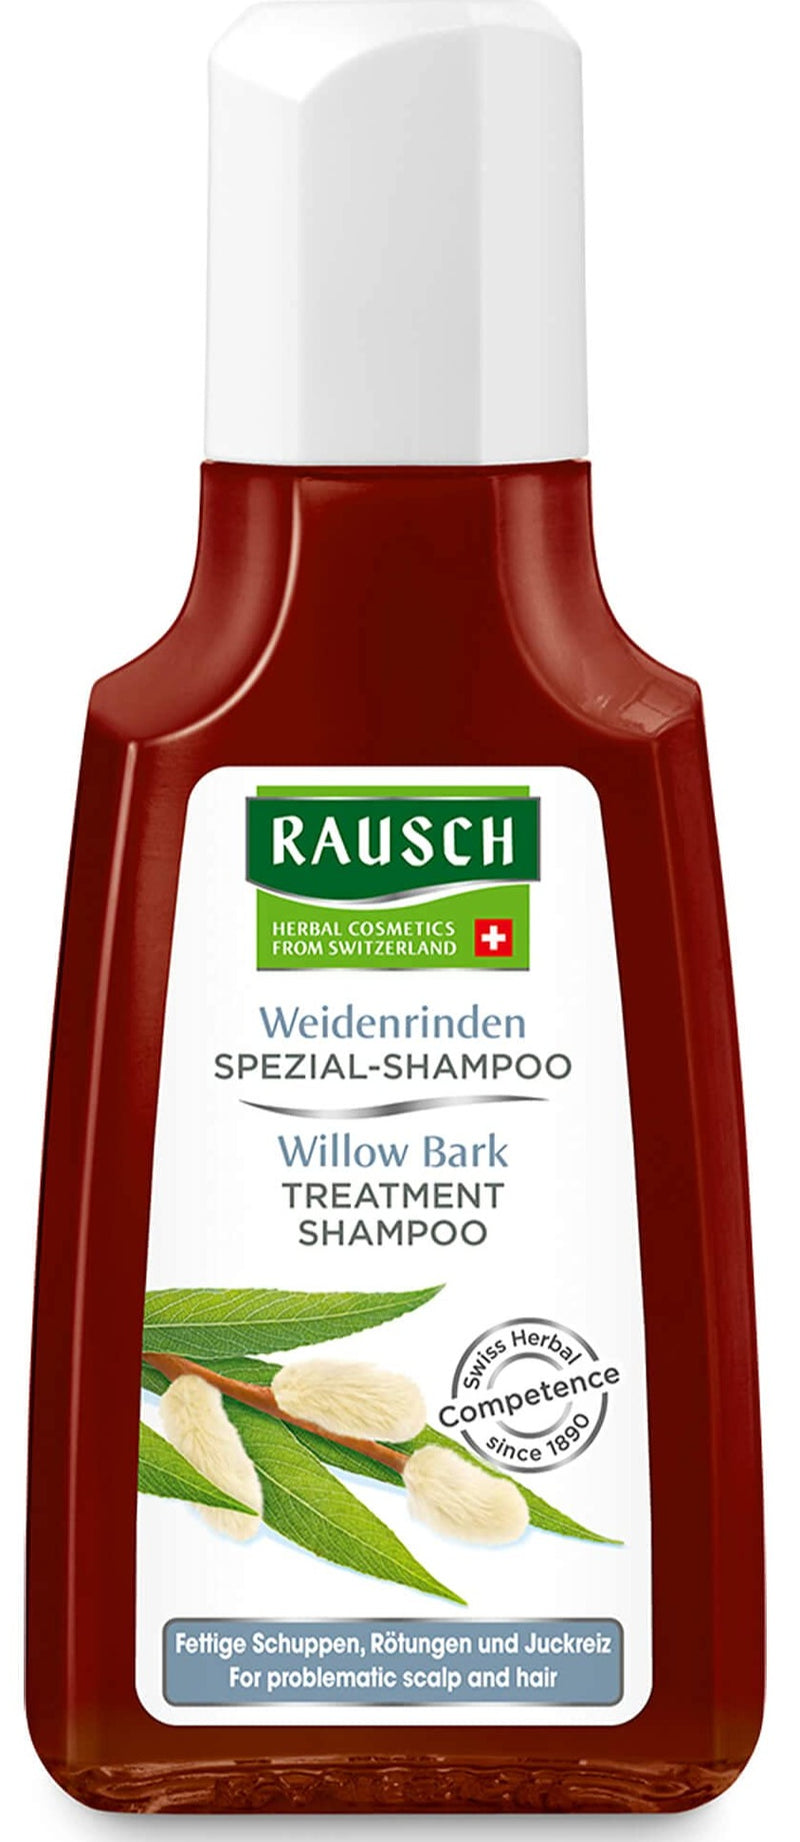 Rausch Weidenrinden Spezial Shampoo - MeStore